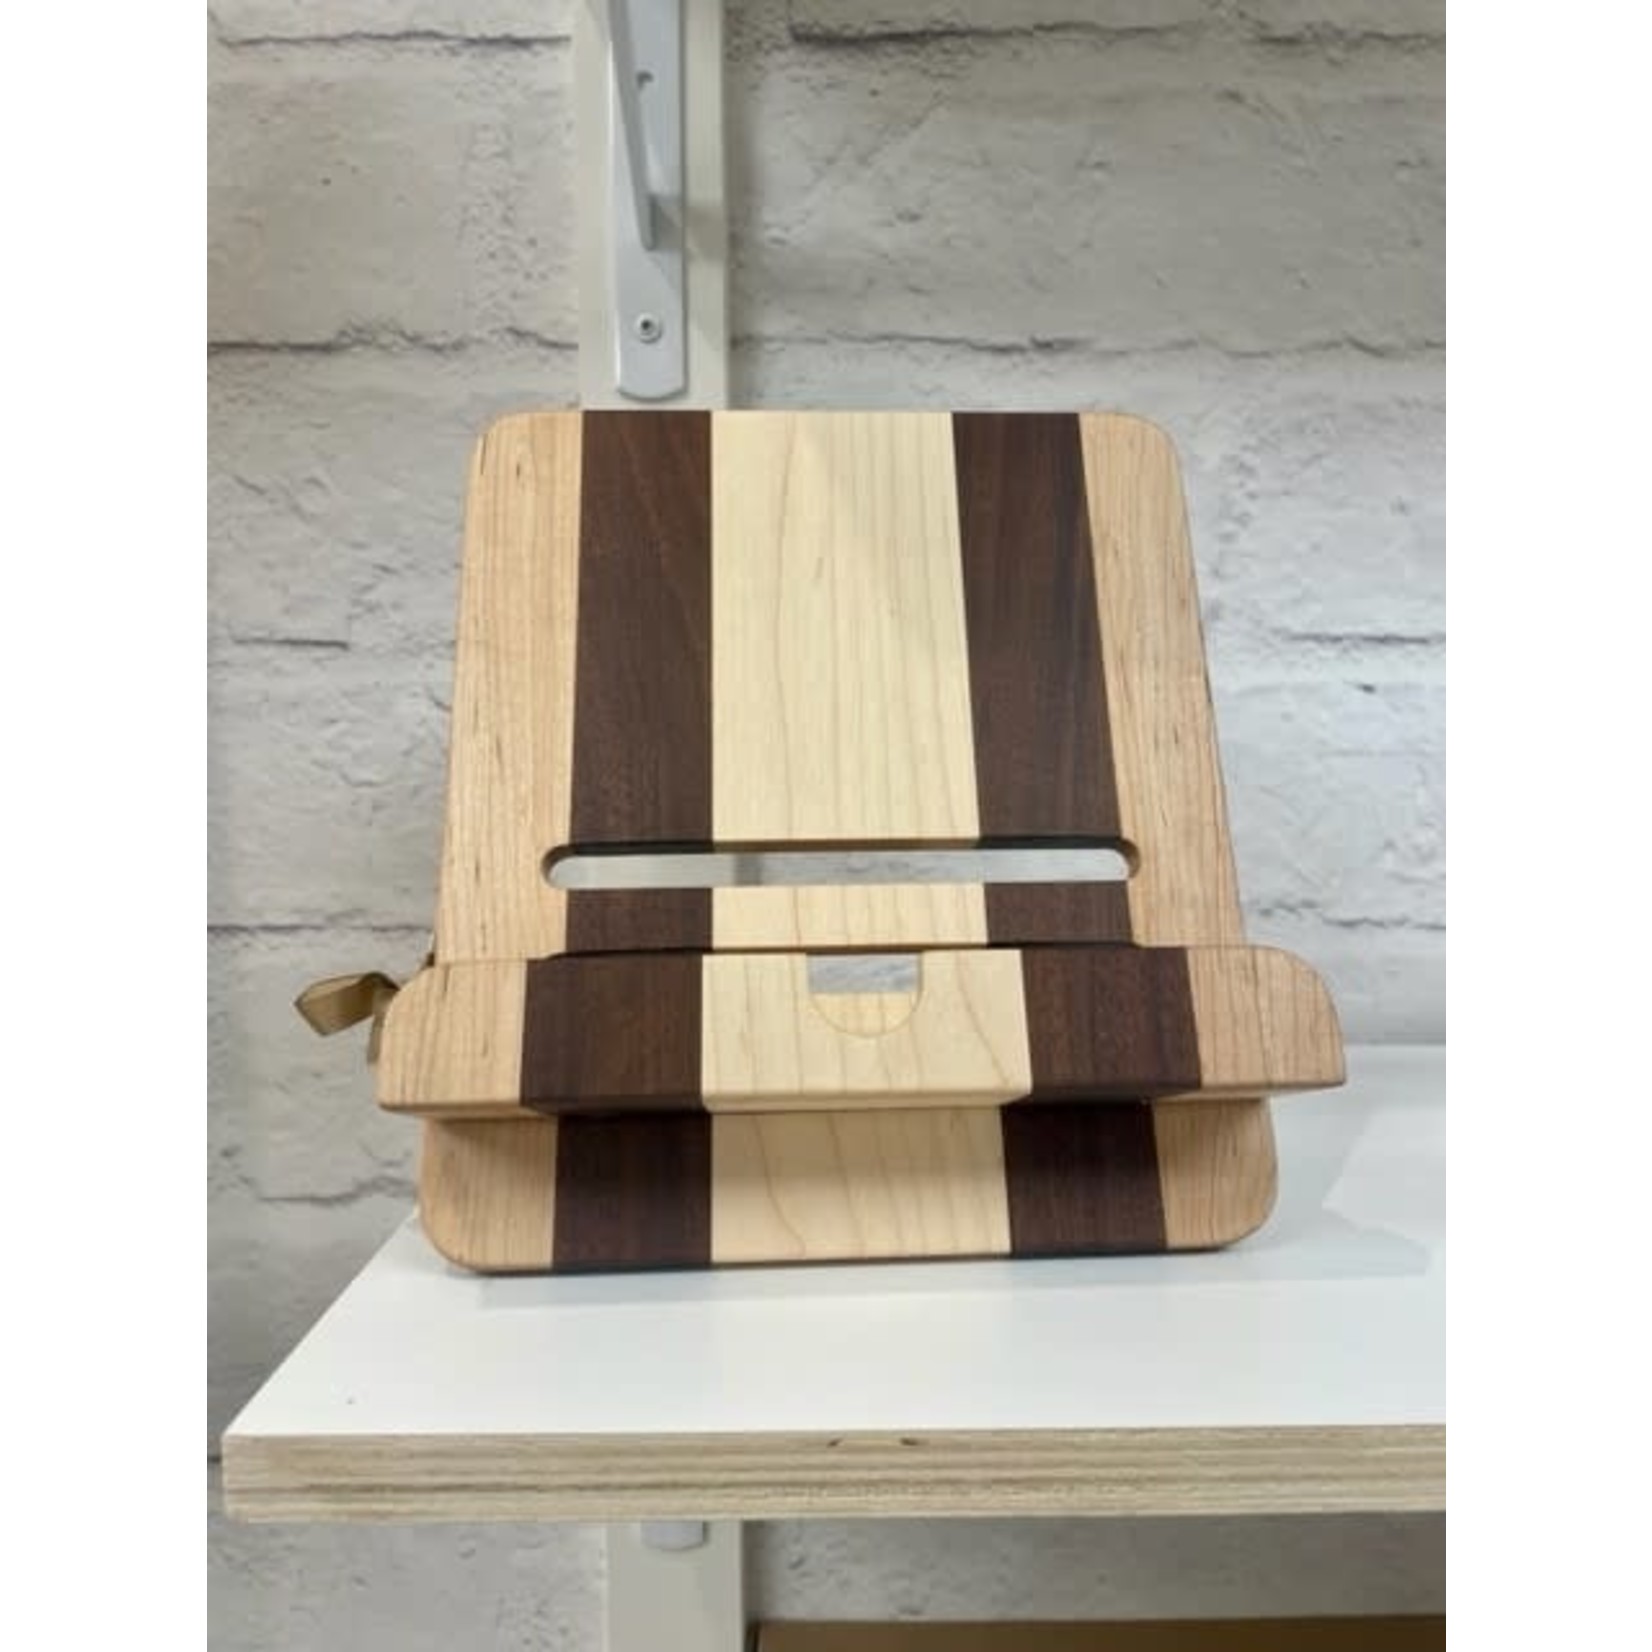 BH Wood Handmade Wood Ipad/Cookbook holders